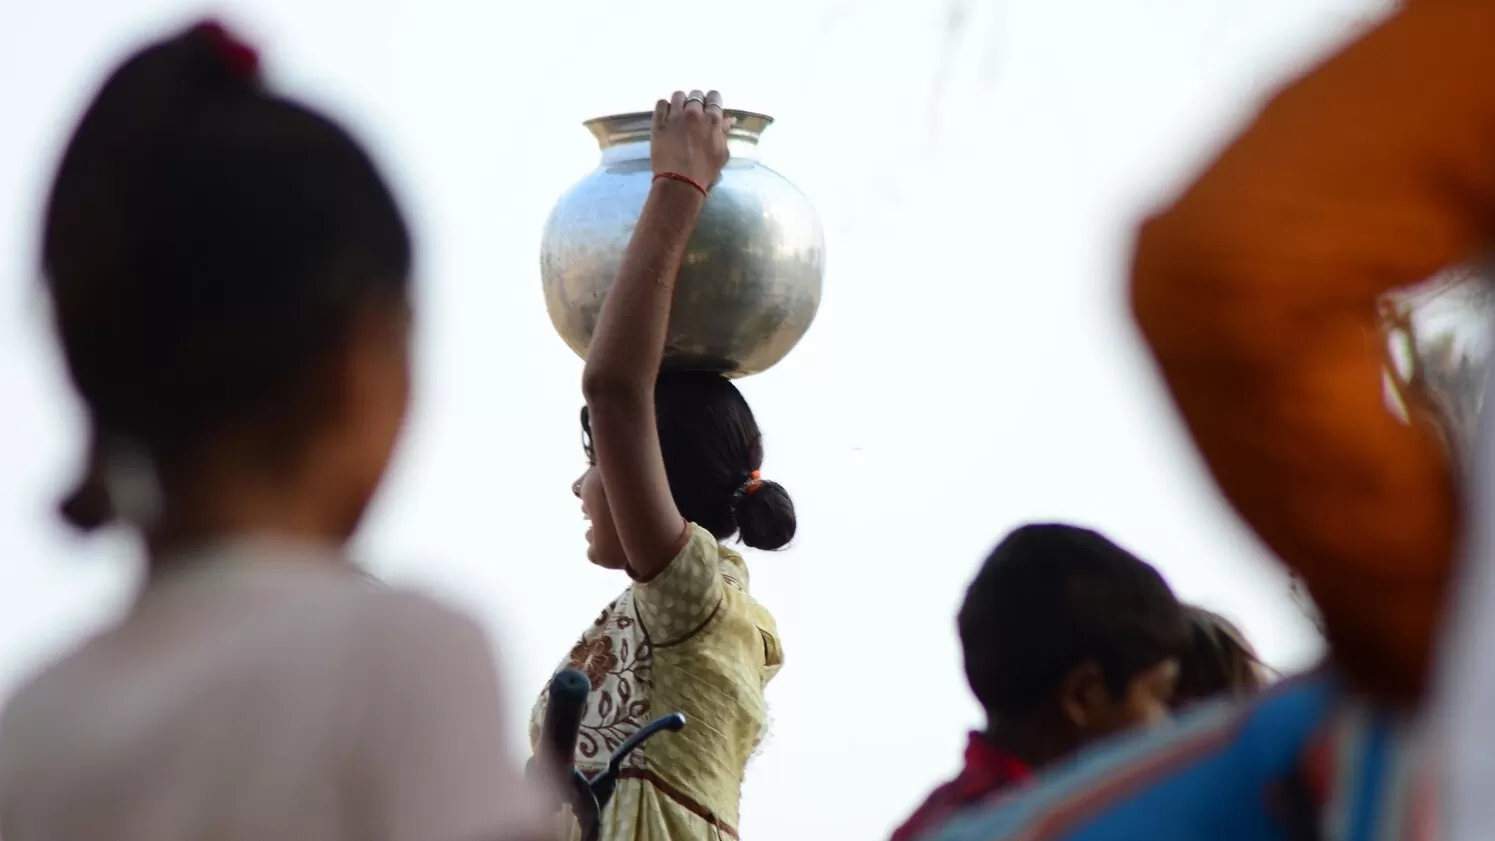 Հնդկաստանում մարդկային զոհաբերություն են արել ասկետ-յոգի հոգու հանգստության համար